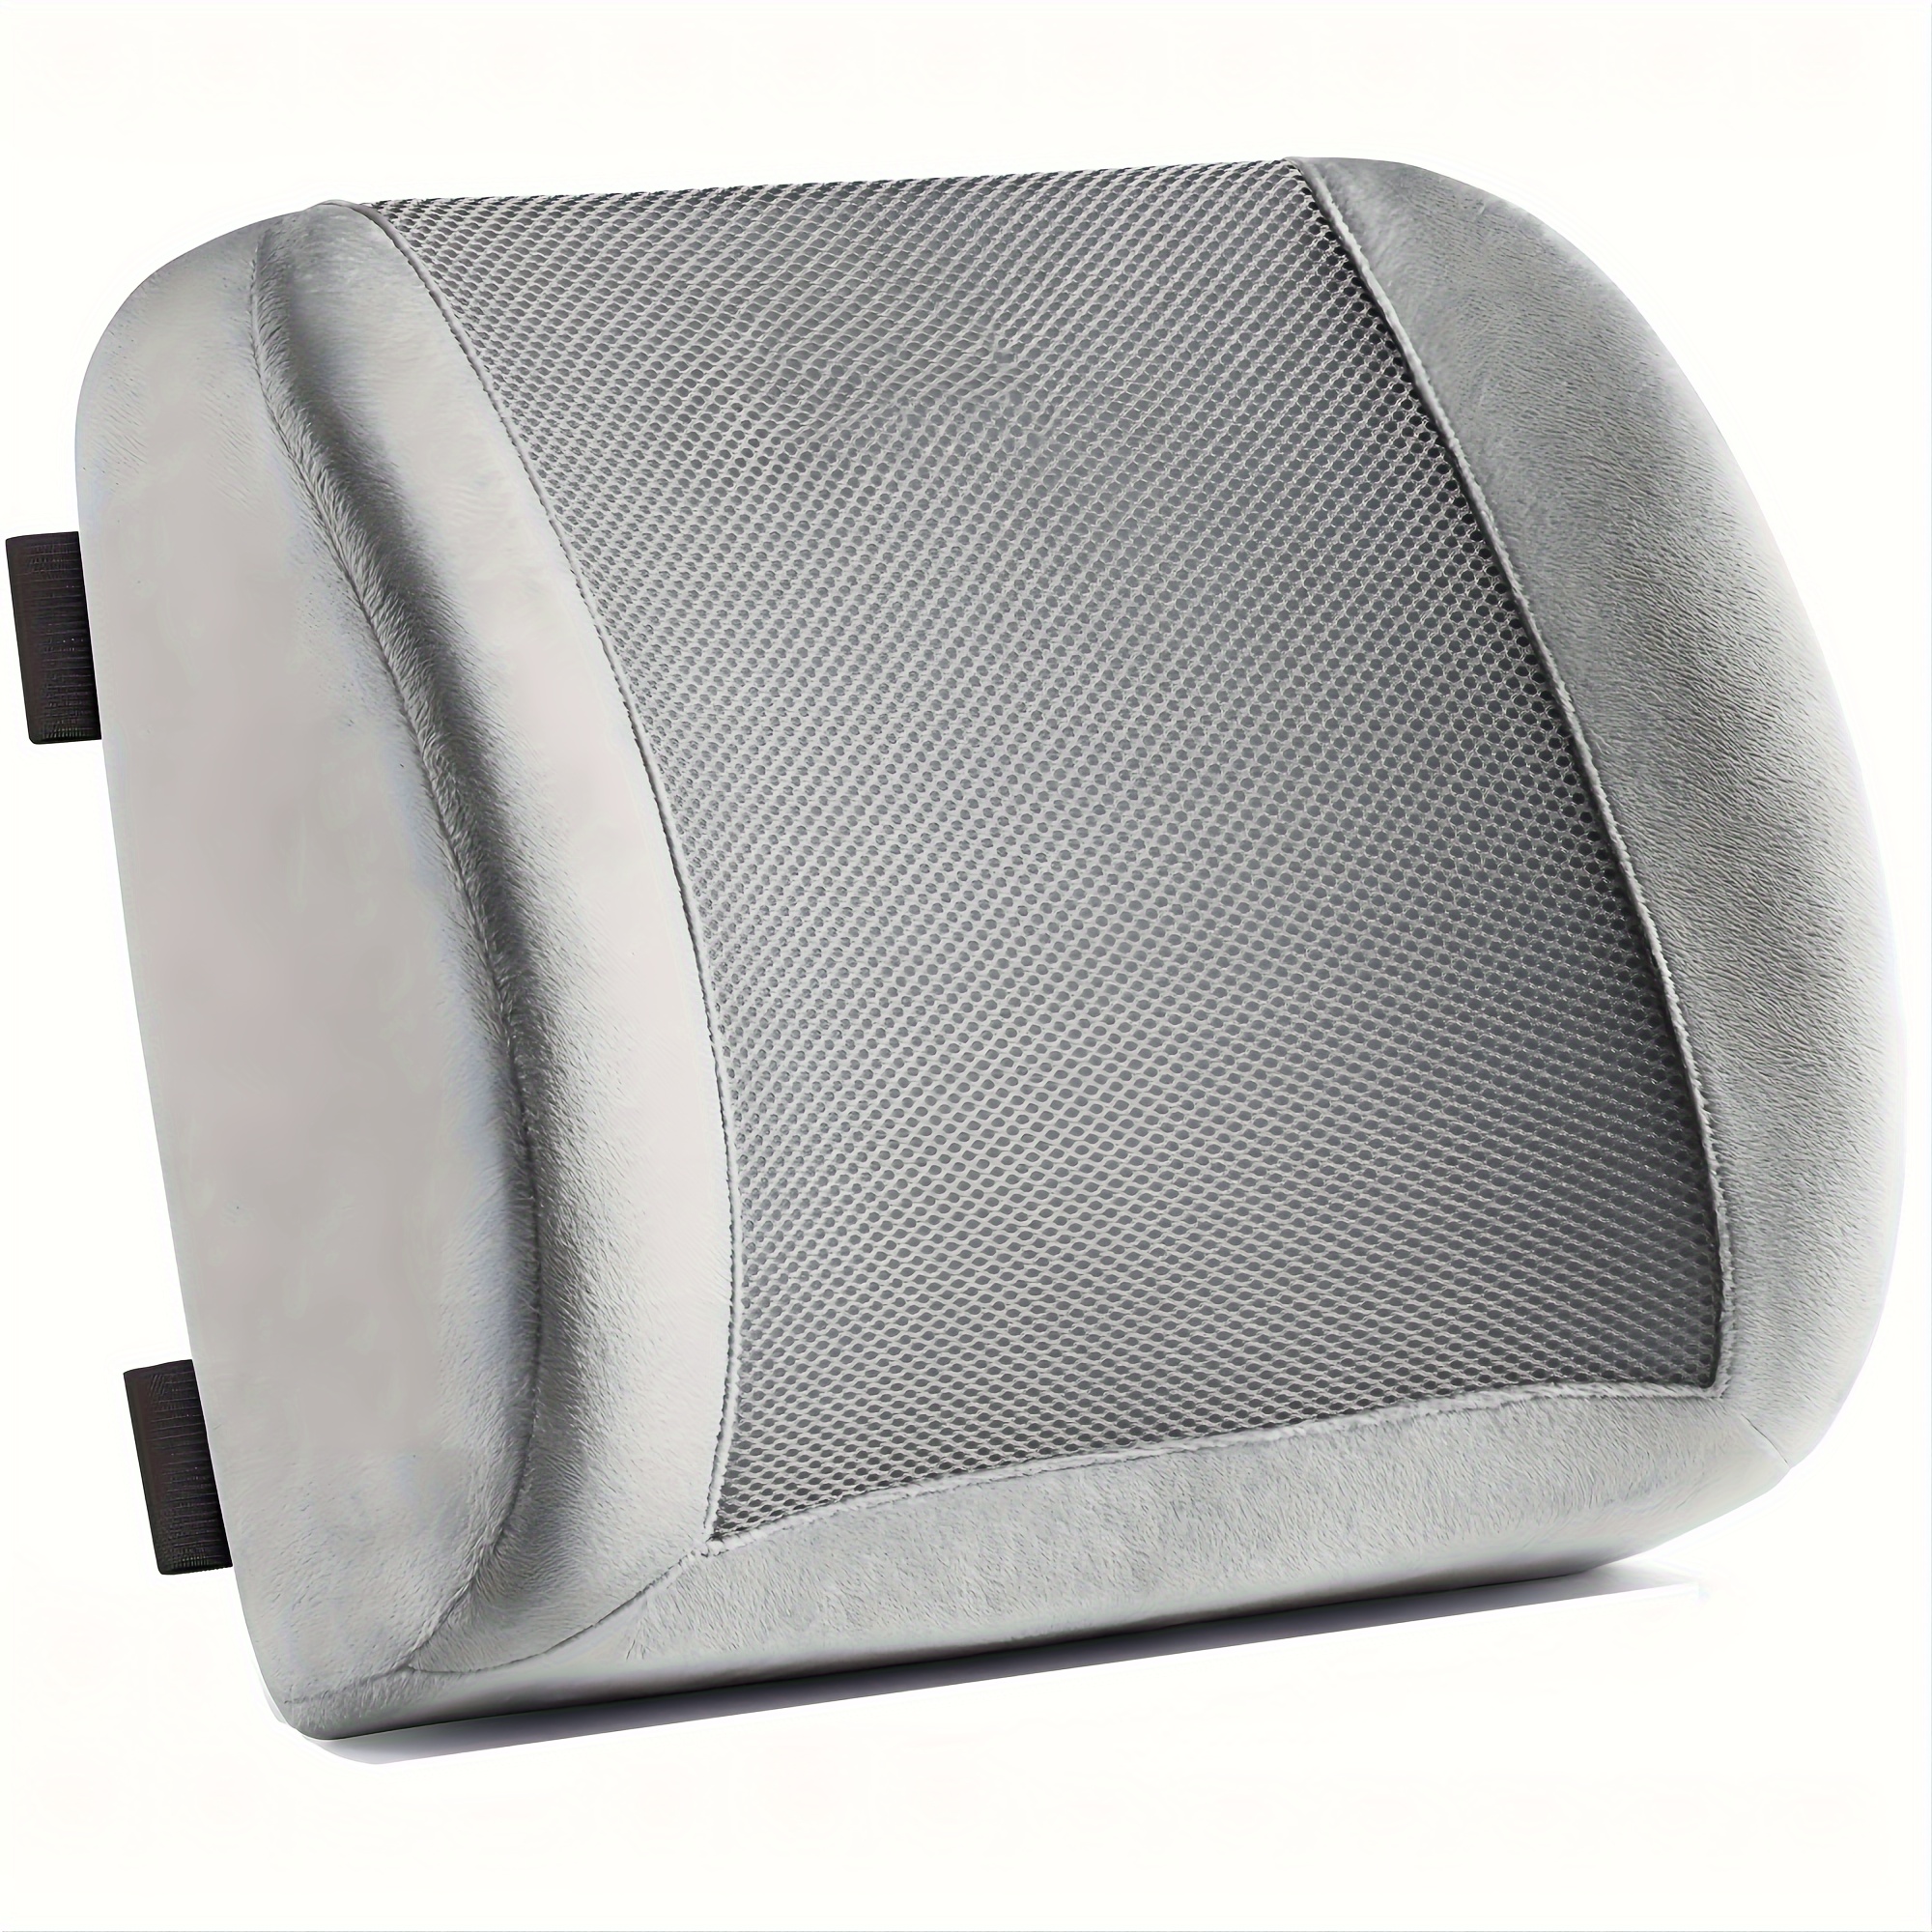 3D Back Support Lumbar Pillow